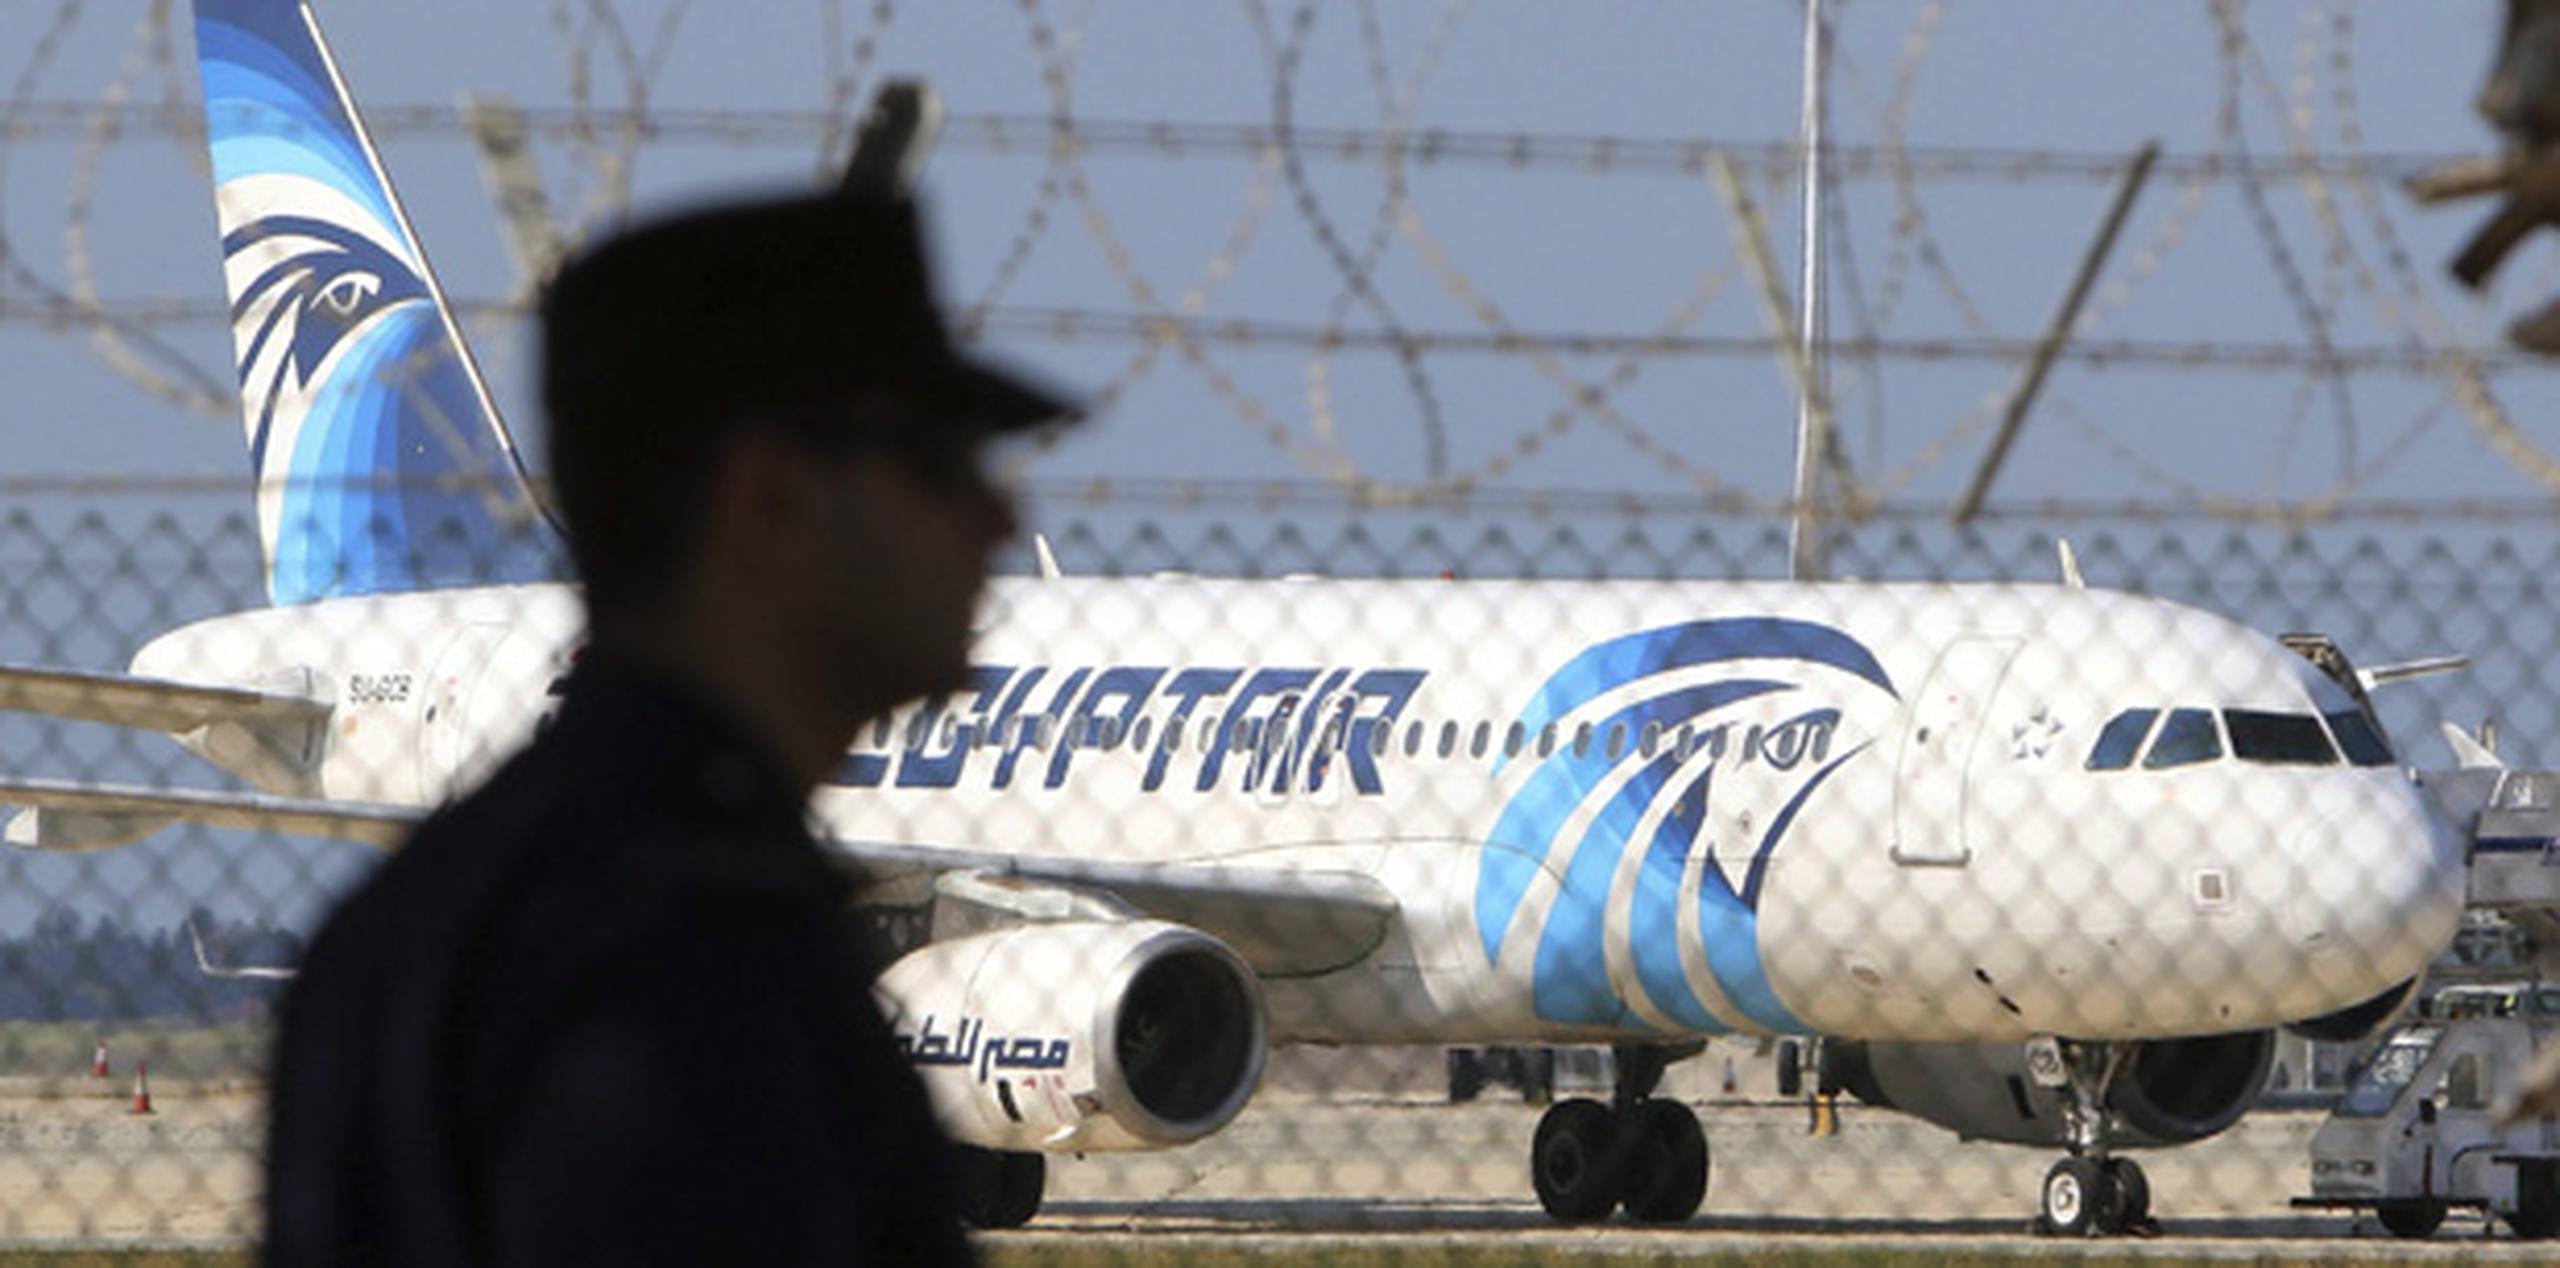 El avión de Egiptair fue secuestrado por un pasajero con un cinturón explosivo. (EFE)